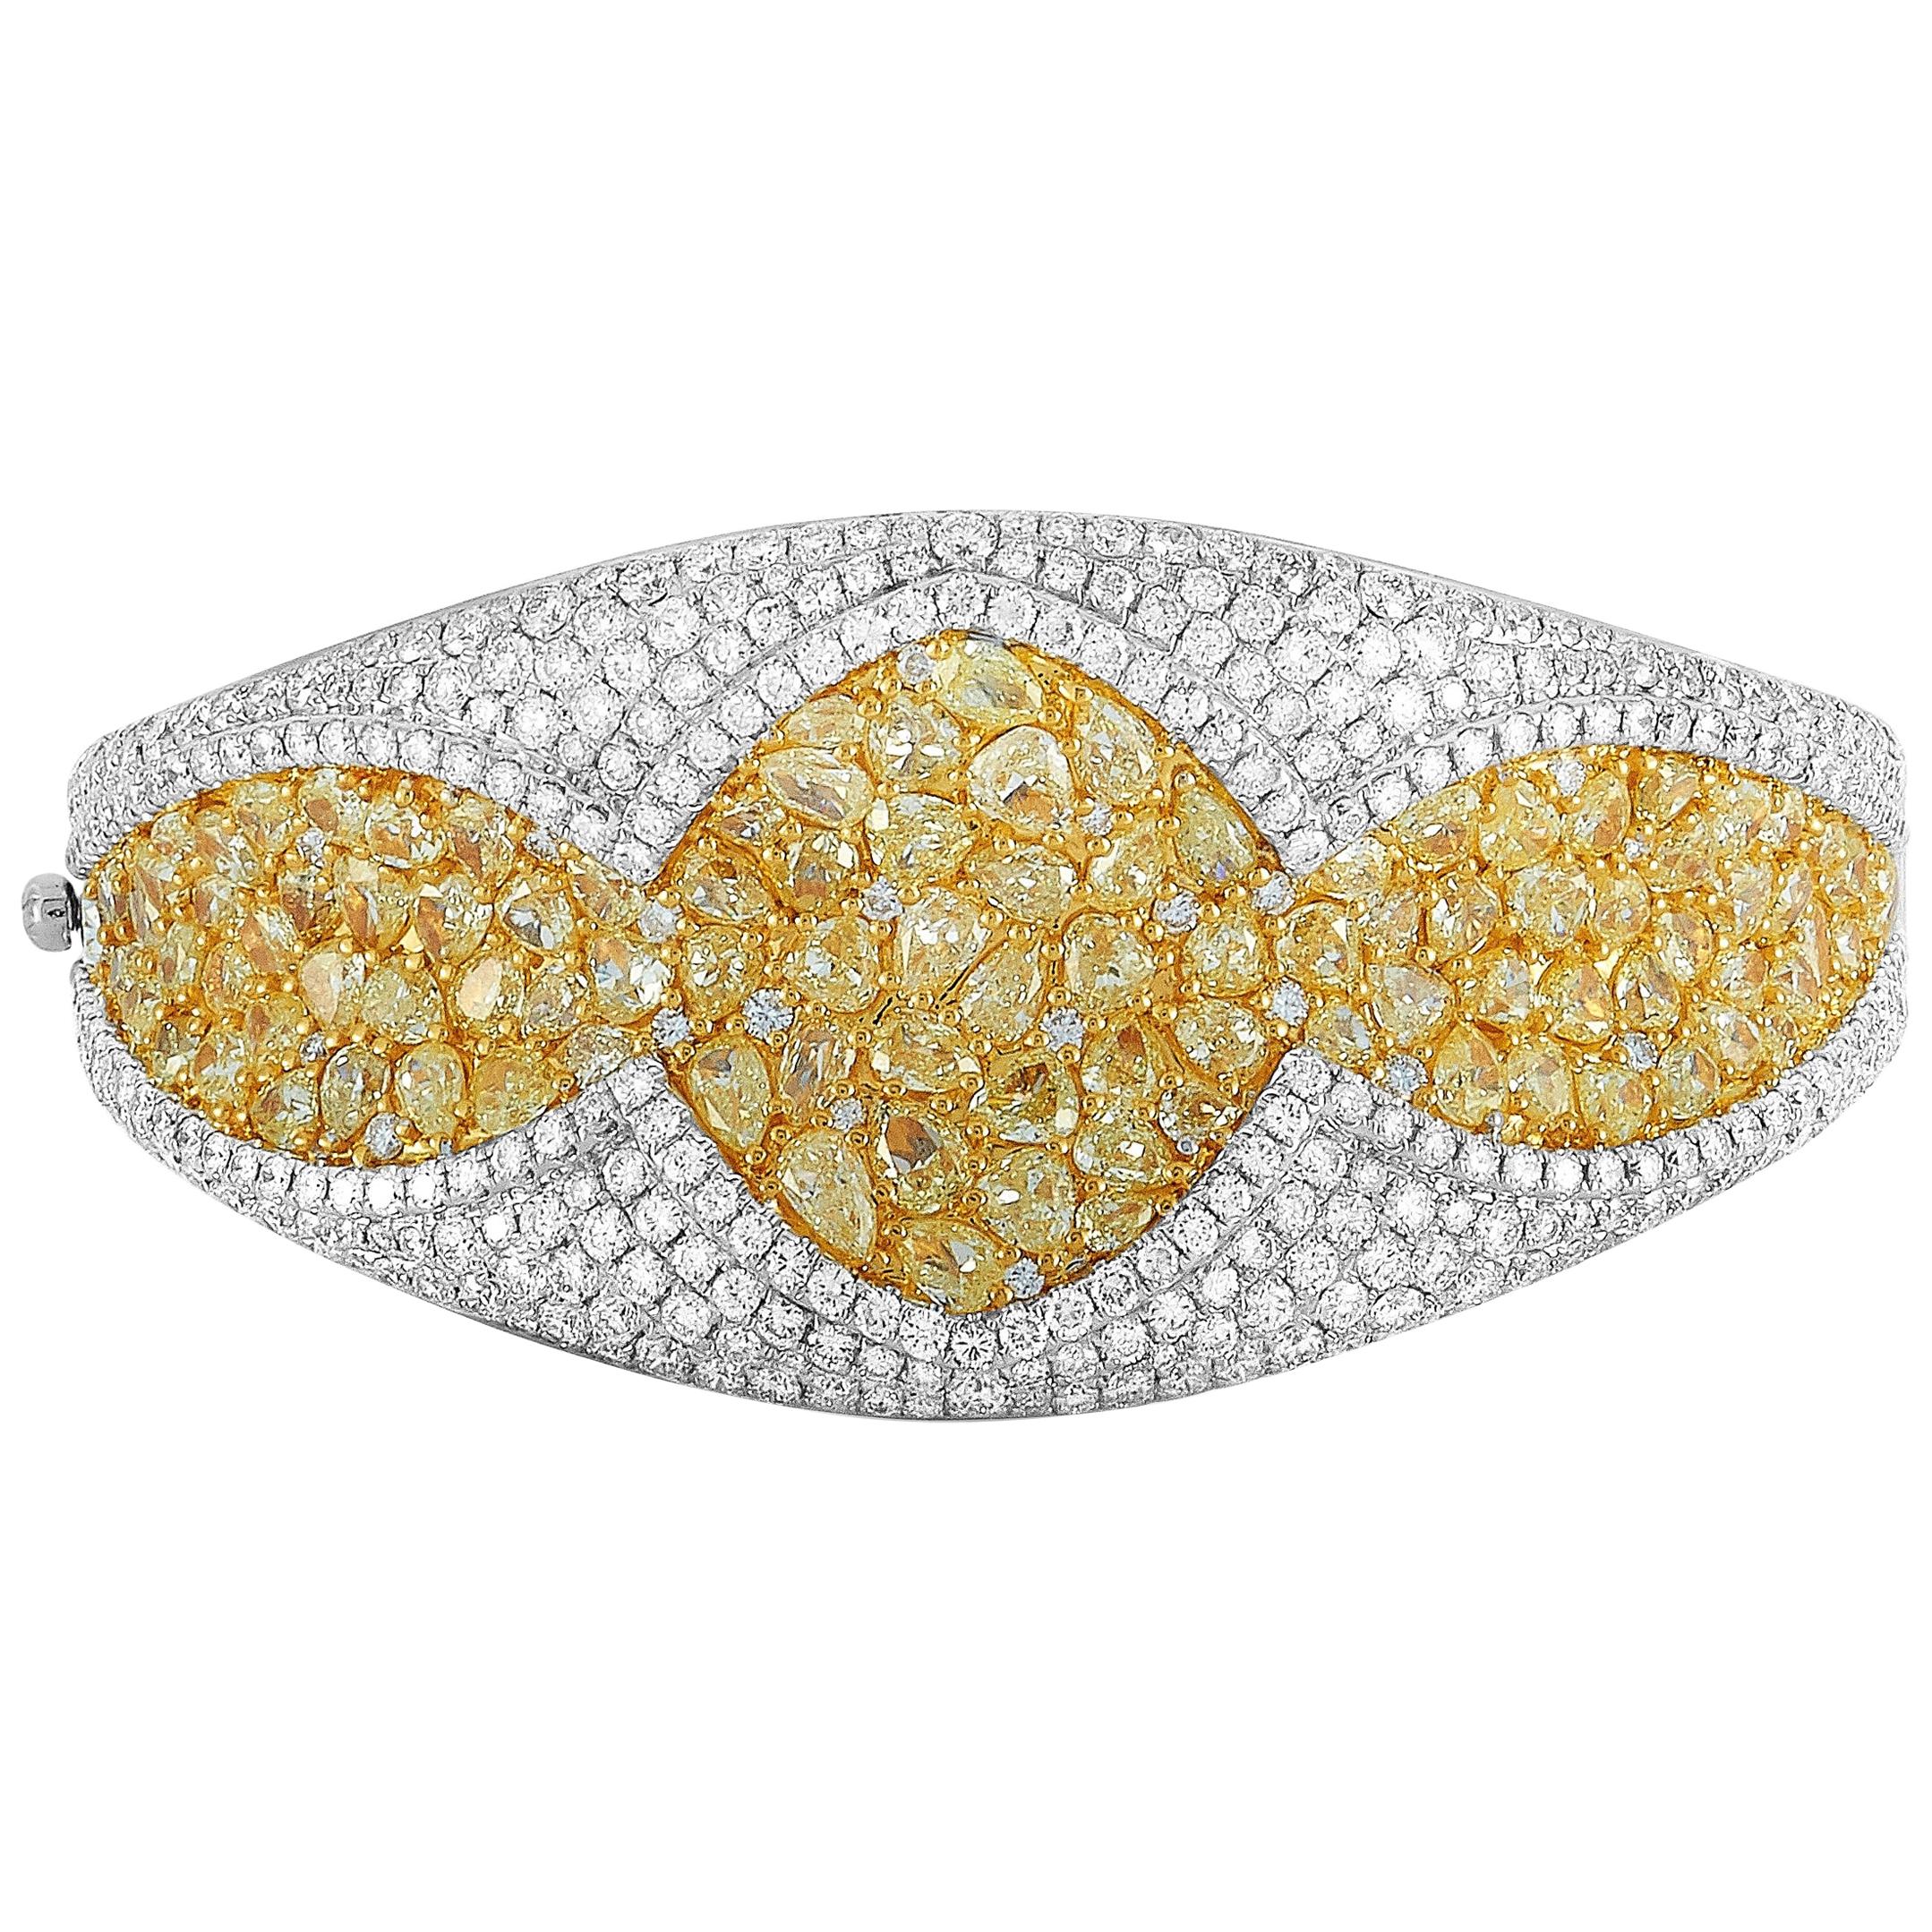 LB Exclusive 18 Karat White Gold 18.10 Carat White and Yellow Diamond Bracelet